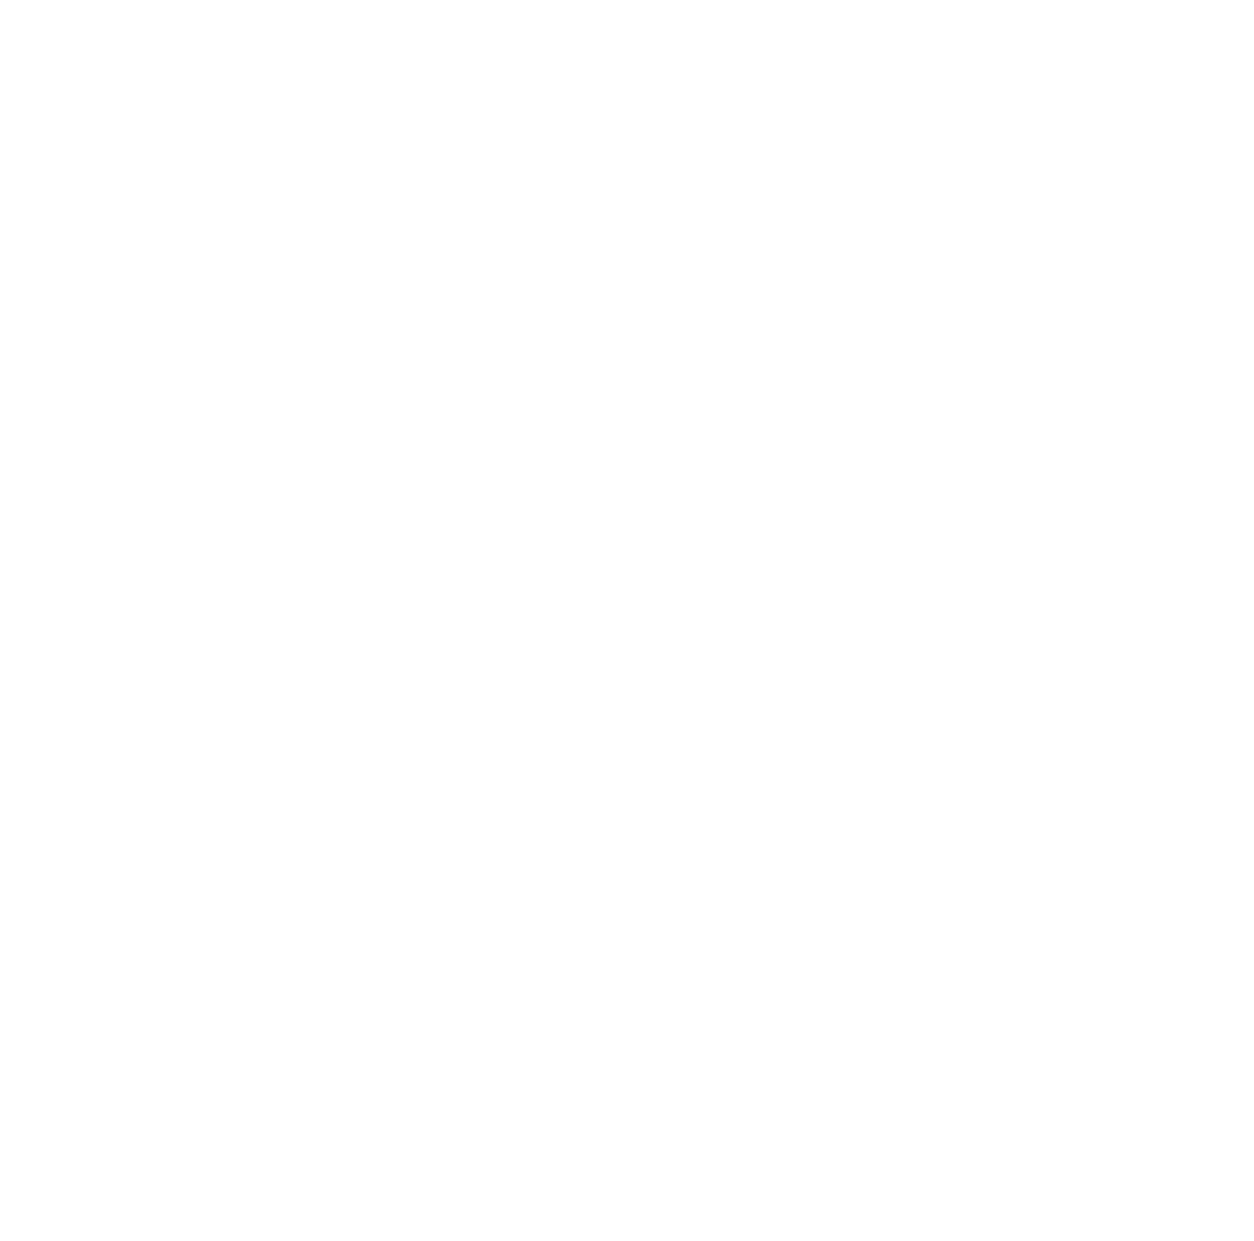 The Brew Crew